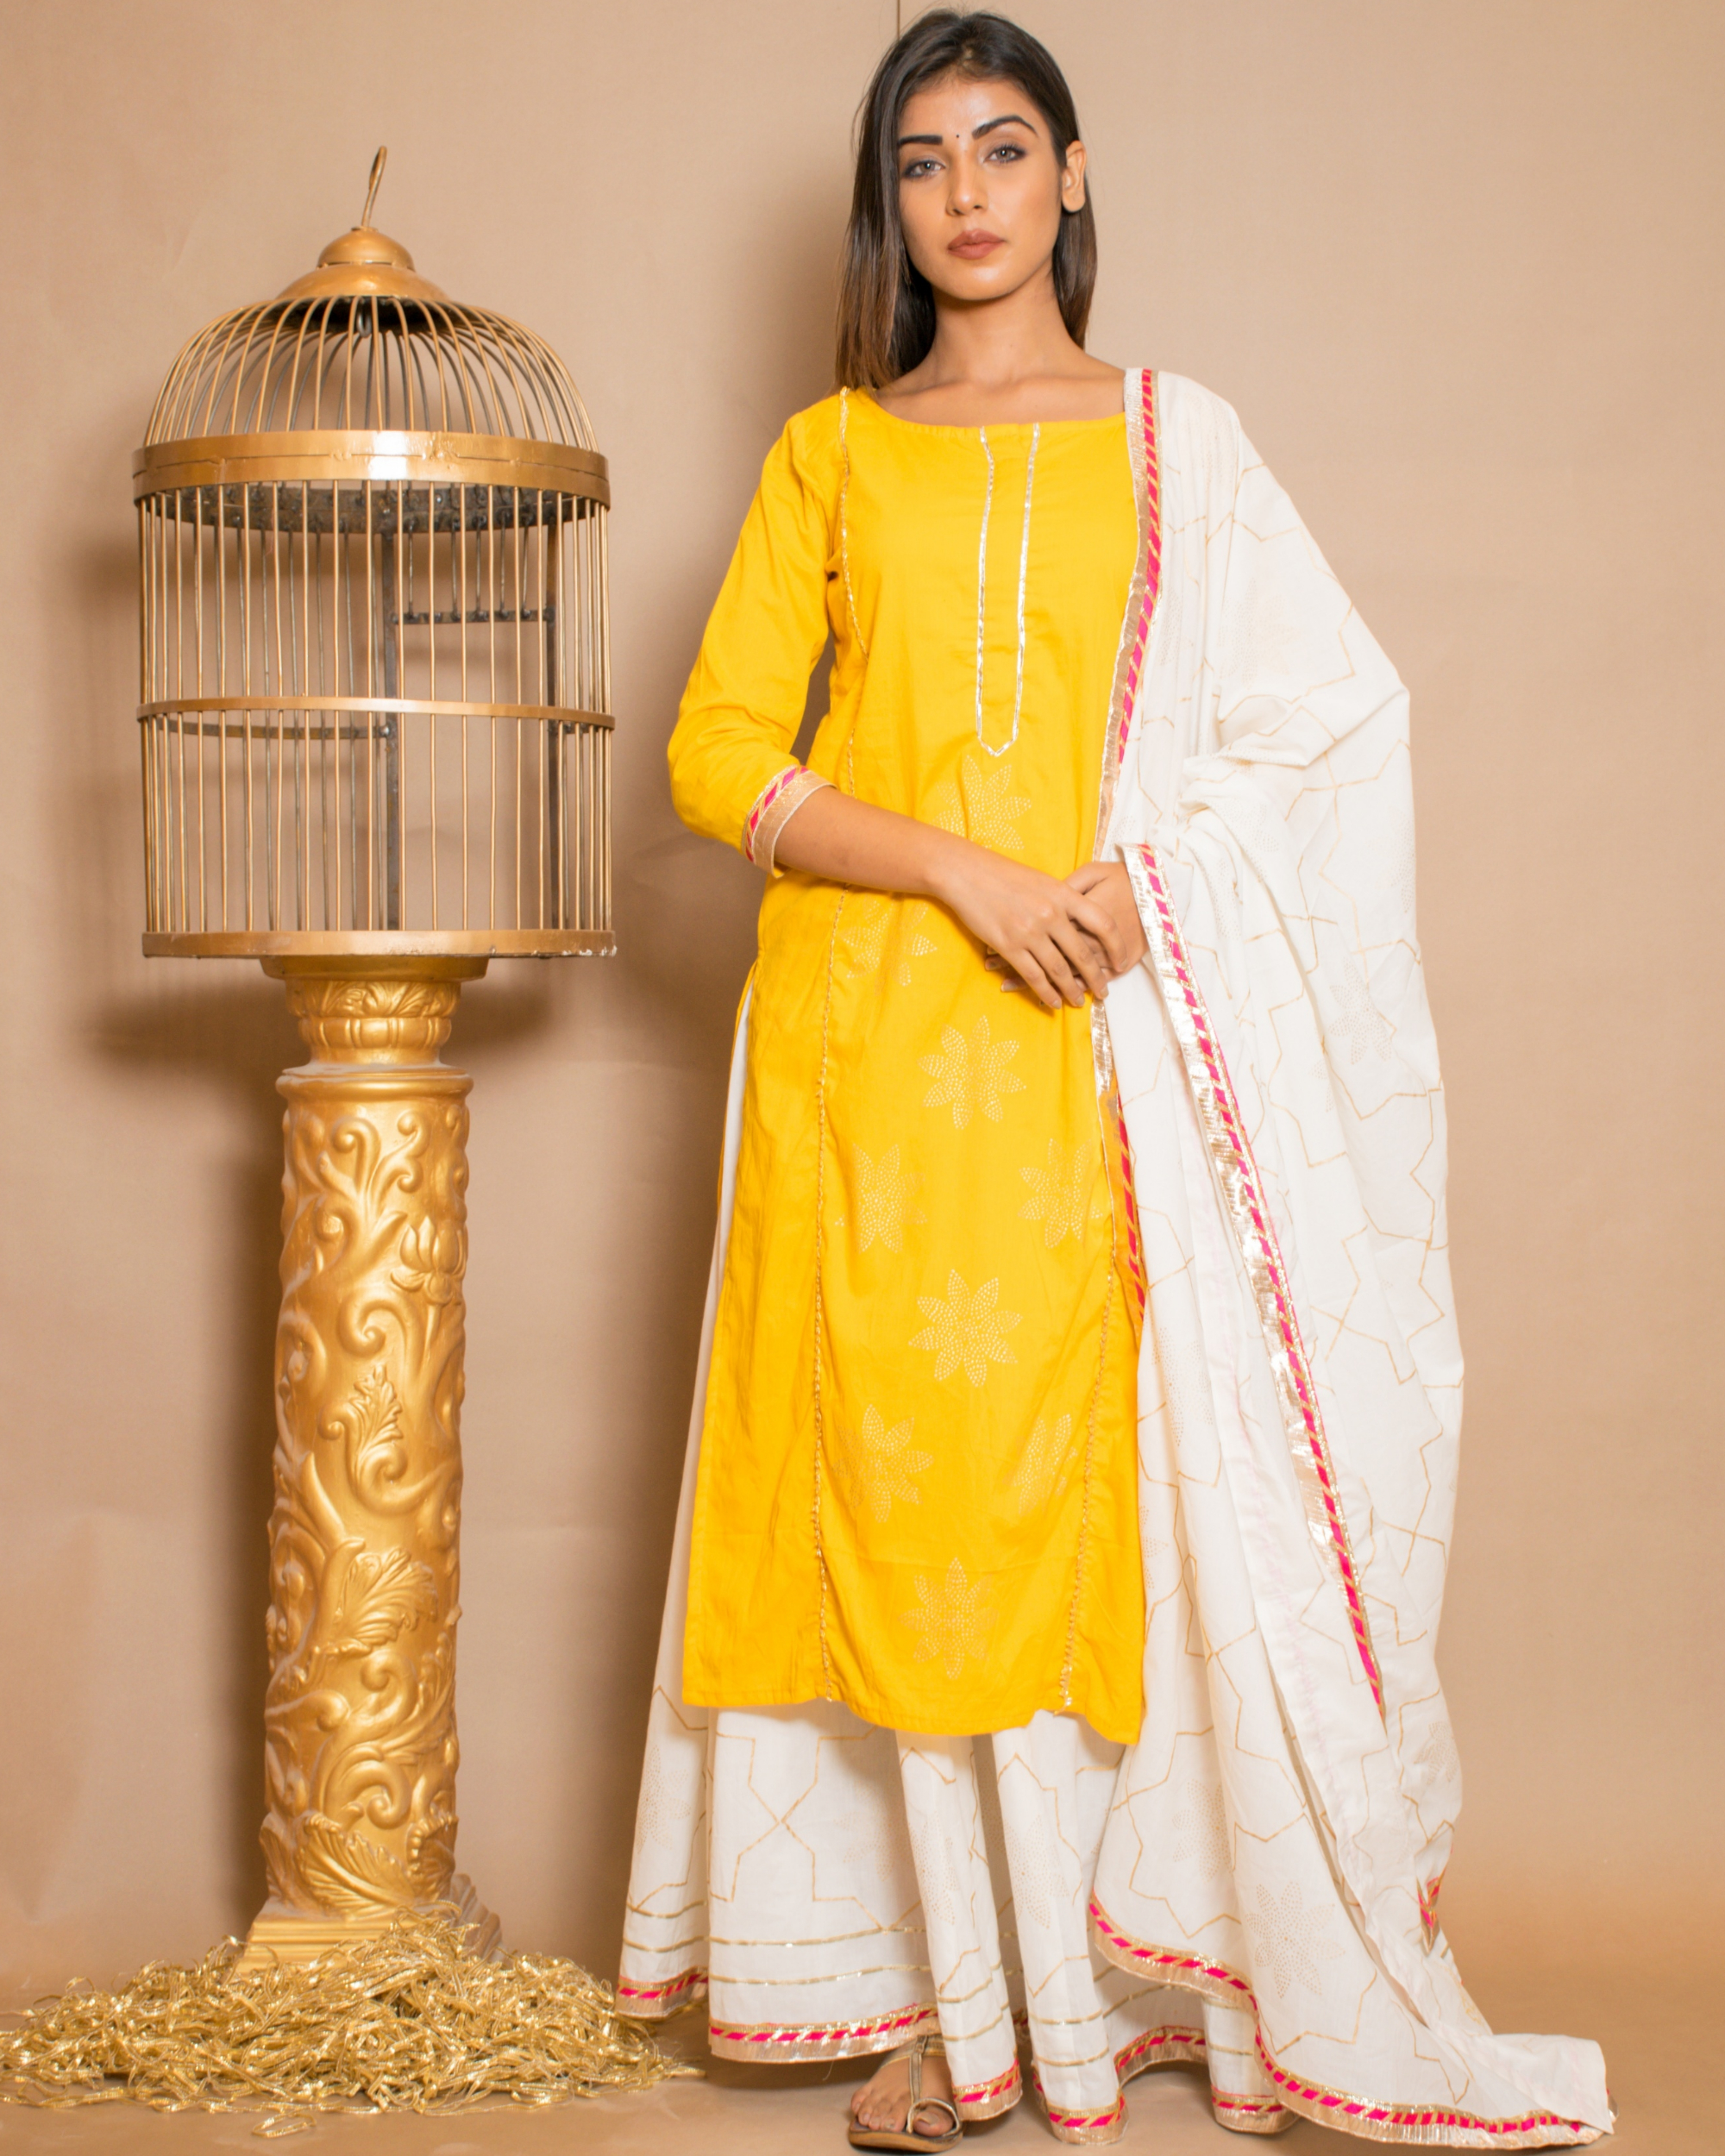 Yellow kurta with white skirt and dupatta - set of three